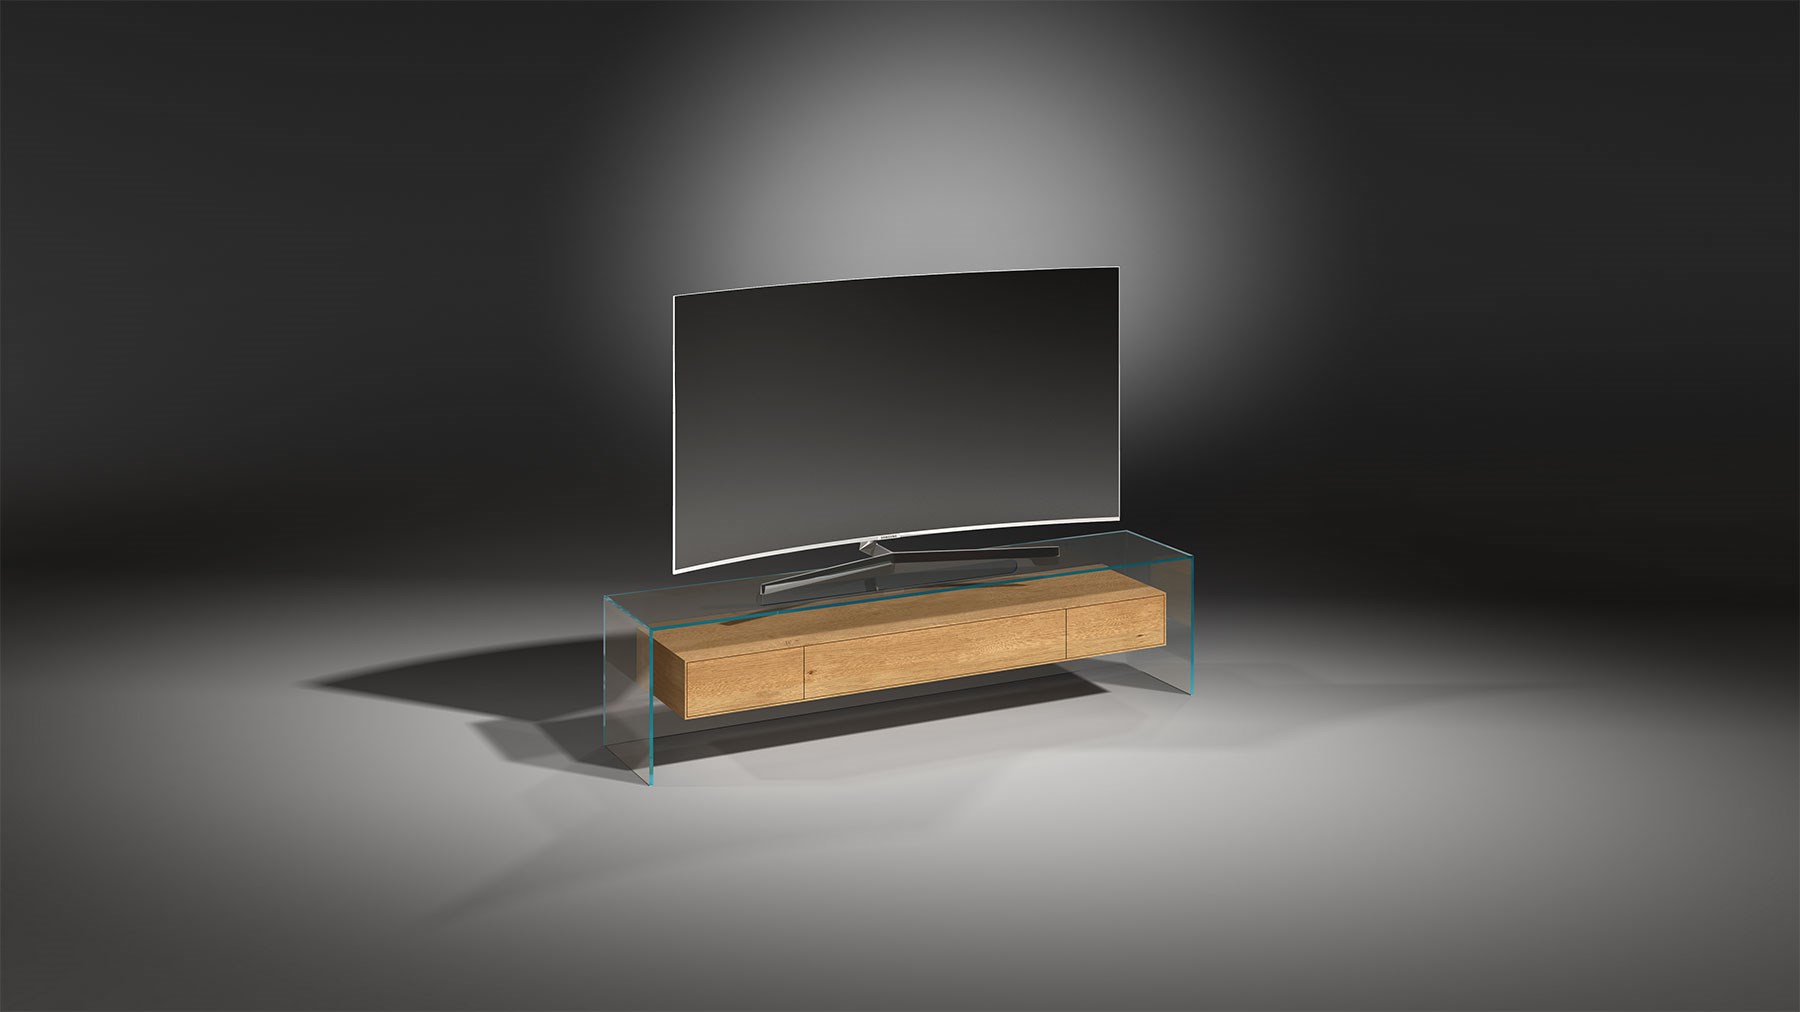 Fernsehrack aus Glas mit Massivholz Schubladenelement in Eiche - FLY 162 Optiwhite - Eiche massiv